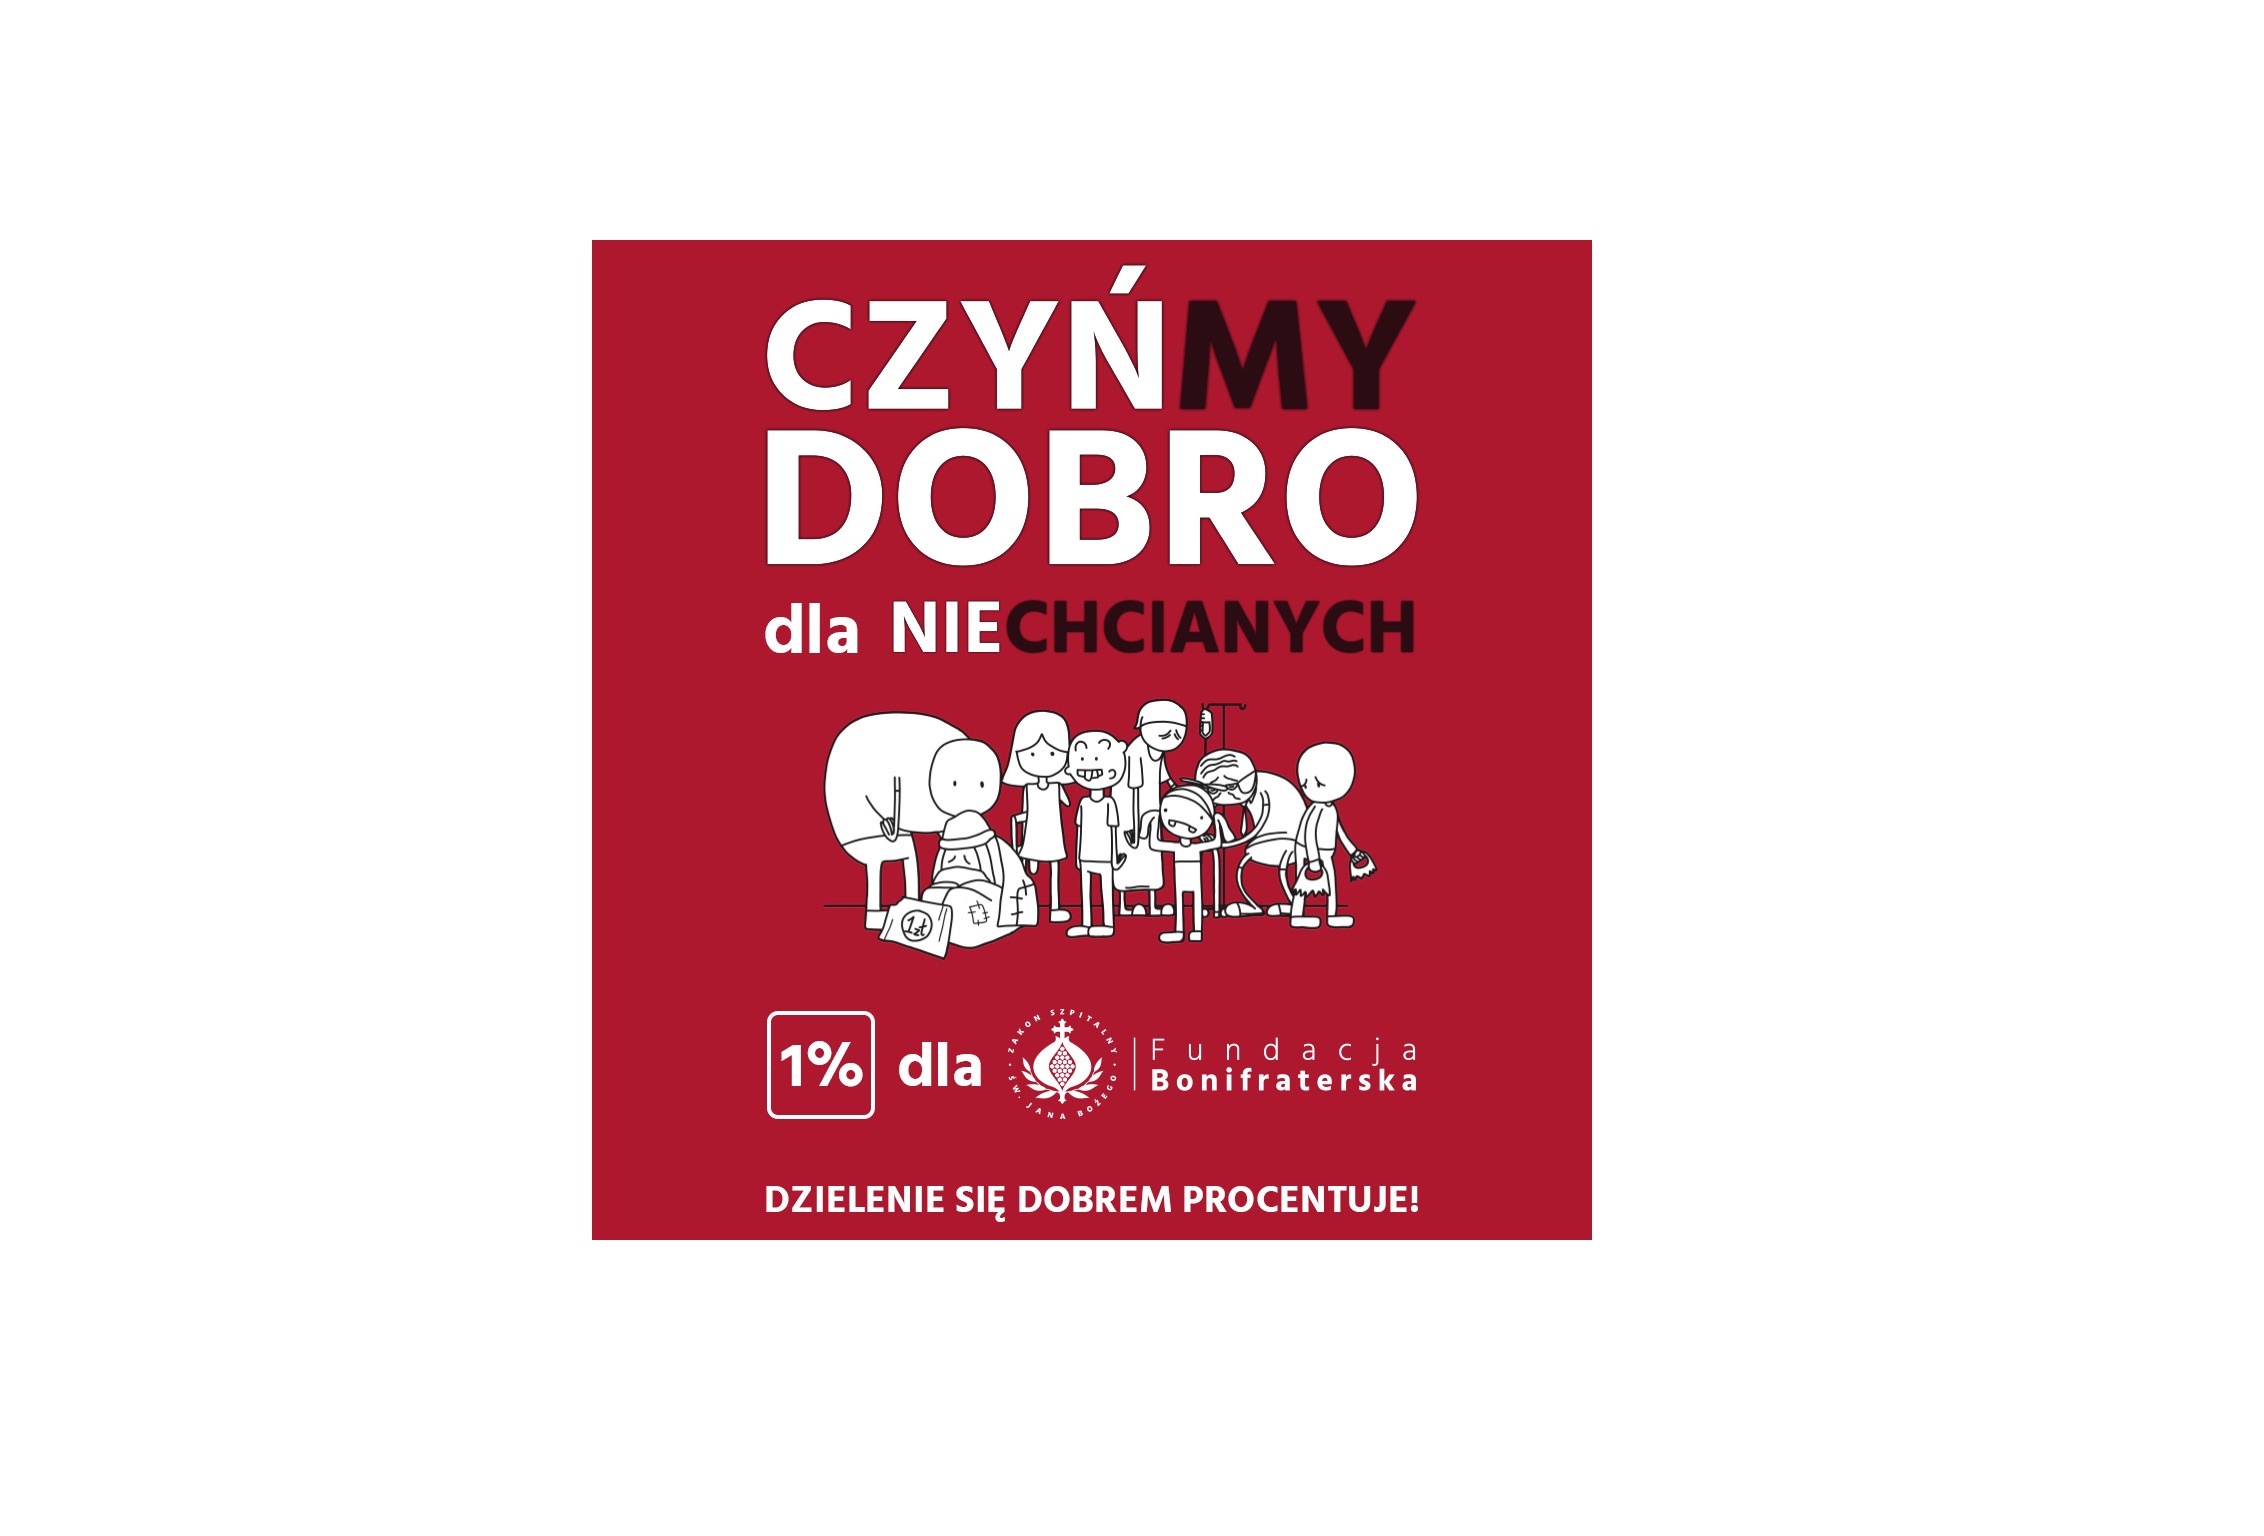 CZYŃ-MY DOBRO! DLA NIE-CHCIANYCH – rusza kampania społeczna Fundacji Bonifraterskiej